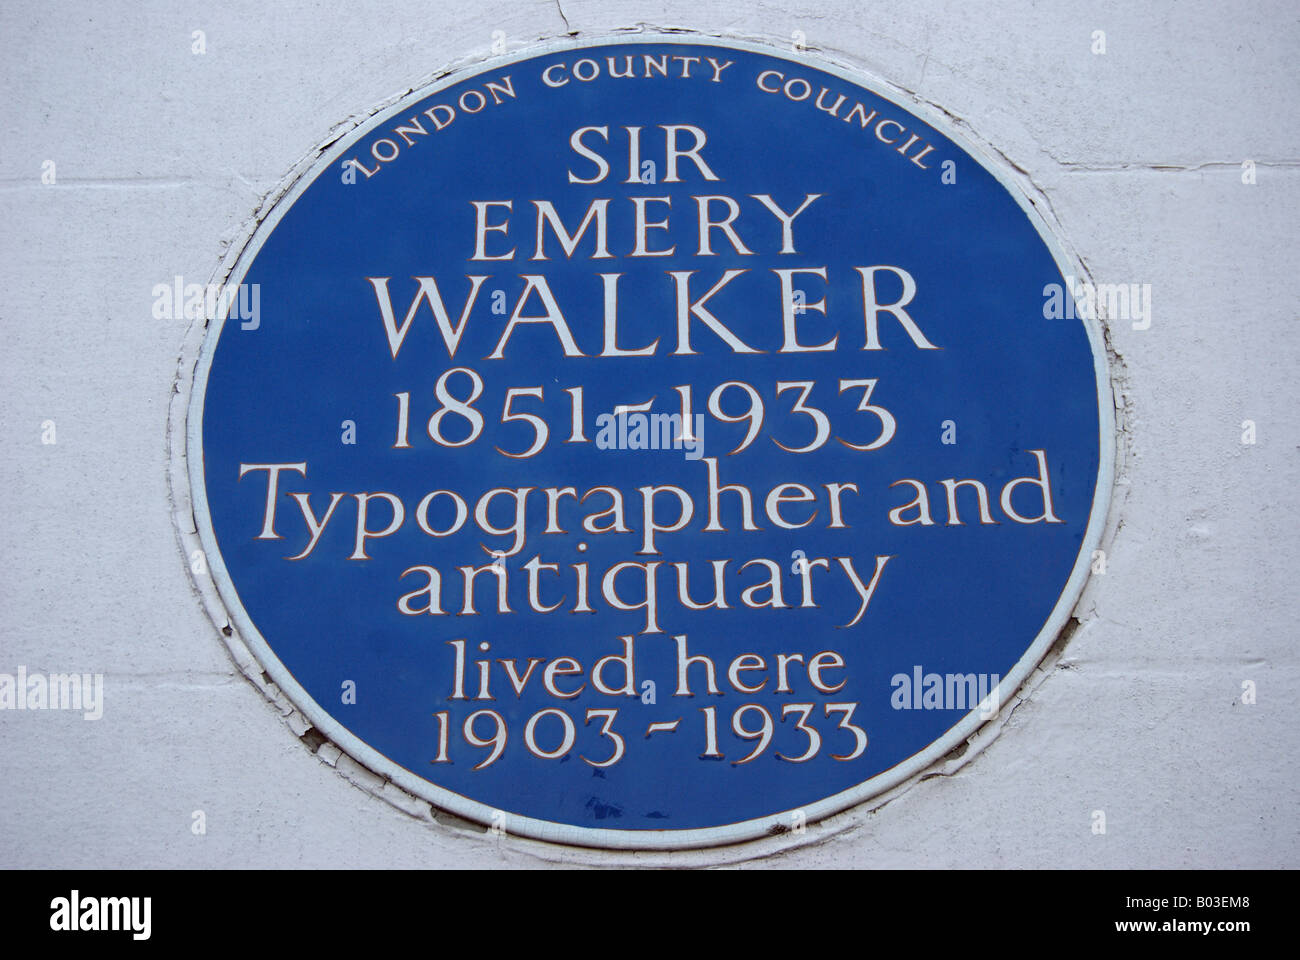 Le london county council blue plaque marquant l'ancienne résidence de sir emery walker, dans Hammersmith terrasse, l'ouest de Londres, Angleterre Banque D'Images